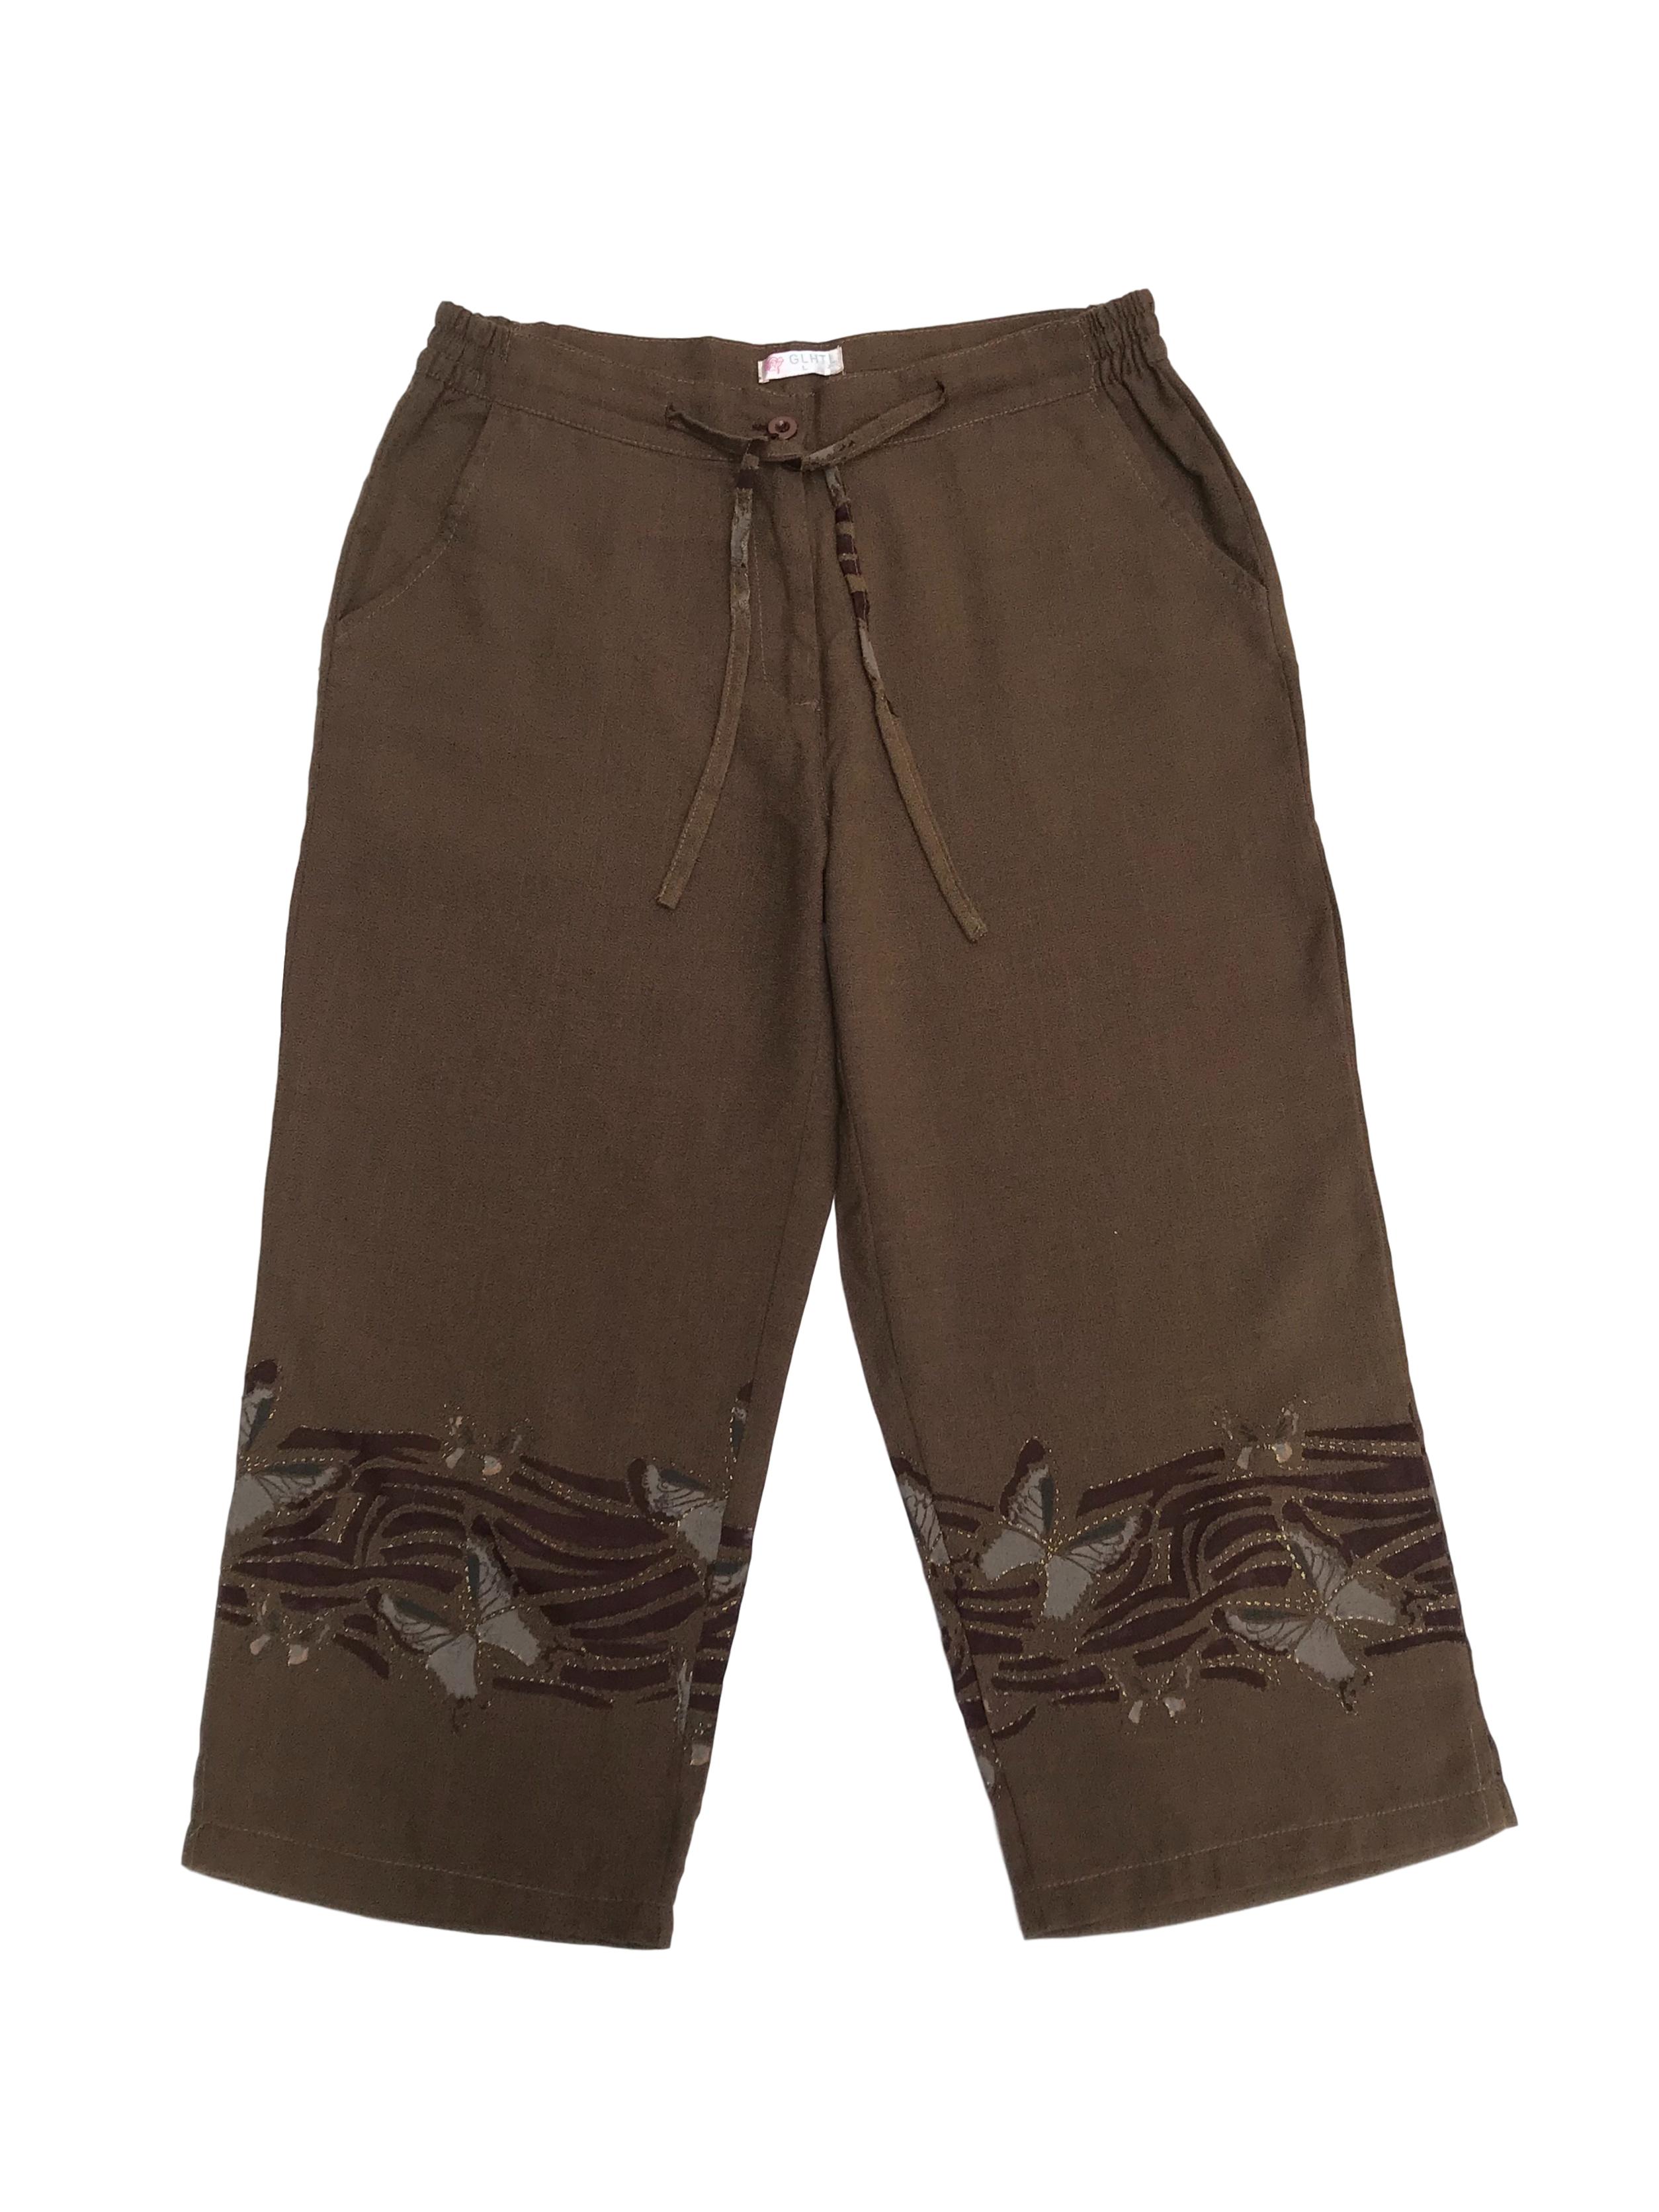 Pantalón capri de pierna ancha marrón, cintura regulable y bolsillos laterales, con estampado en la basta. Cintura 77cm Largo 79cm